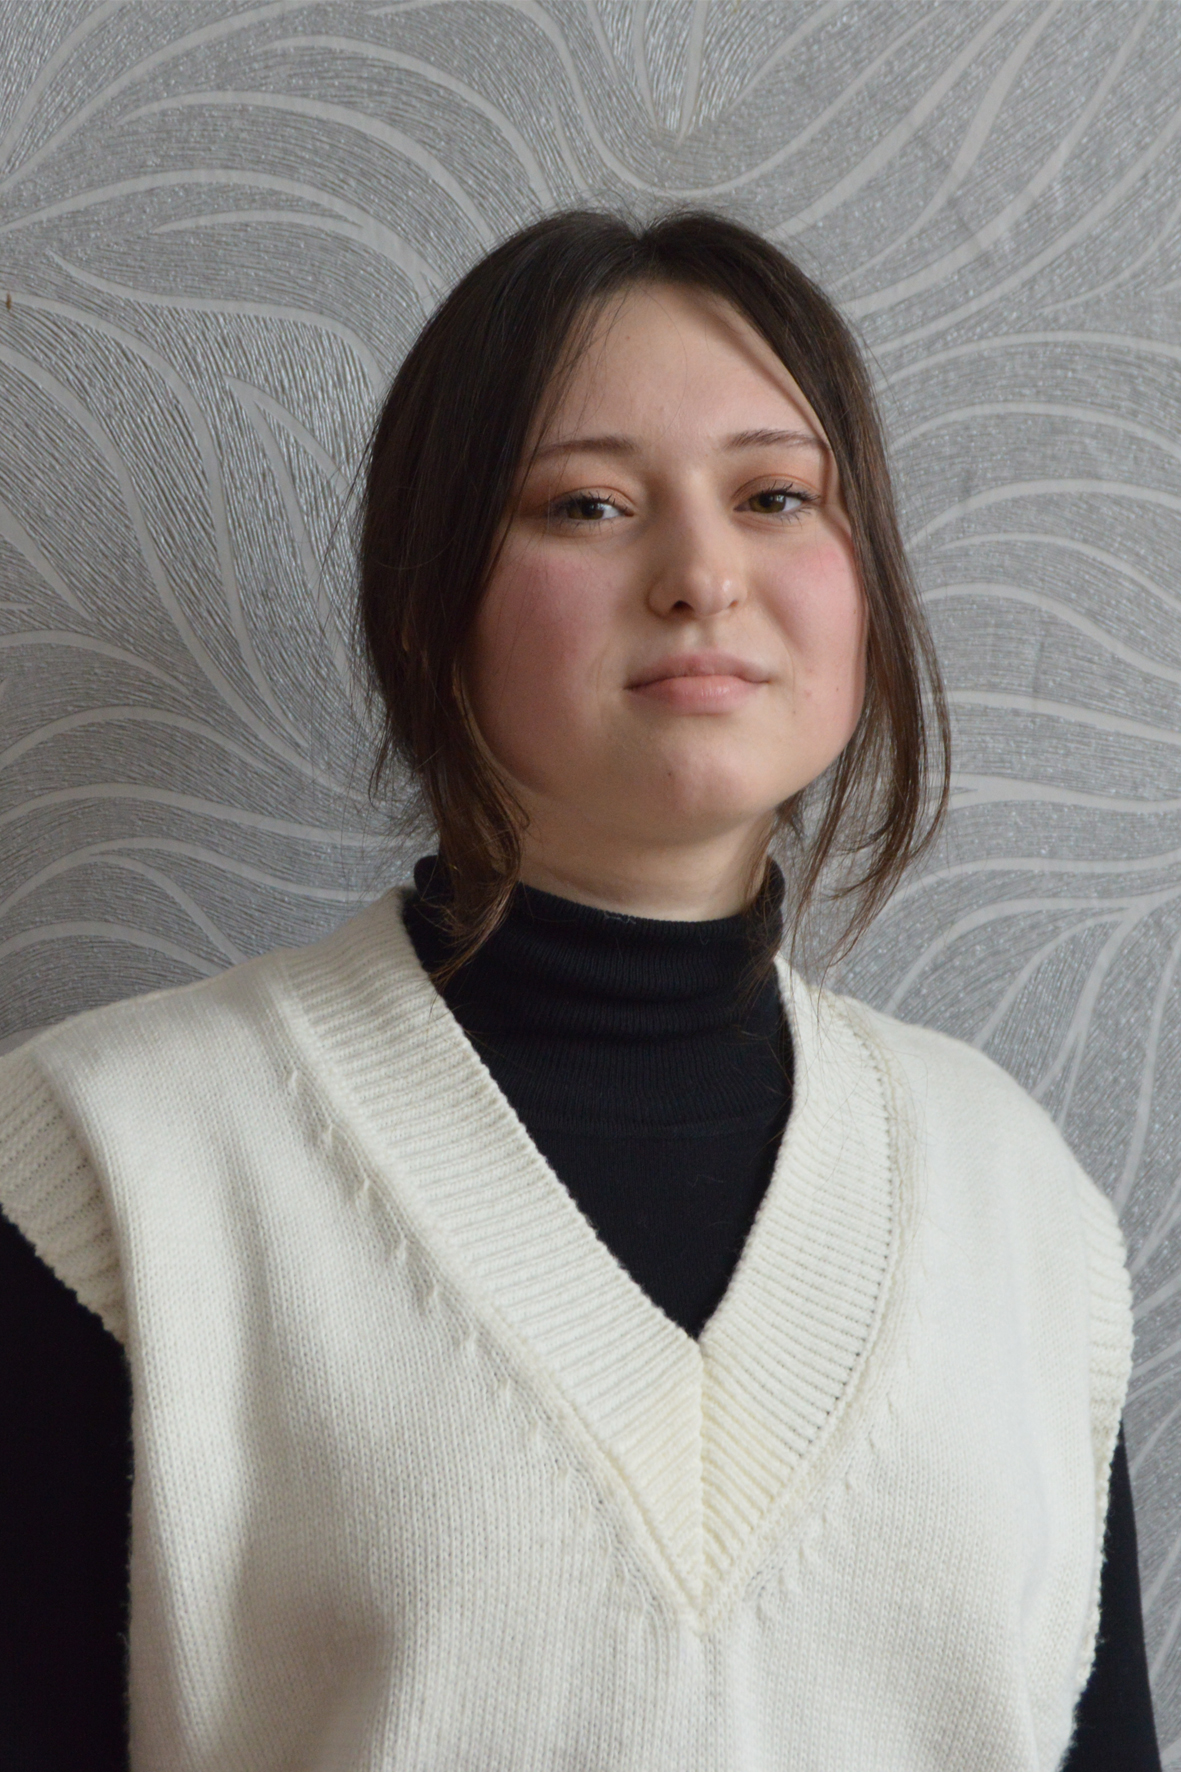 Турло Валерия Владимировна, учебная группа № 228